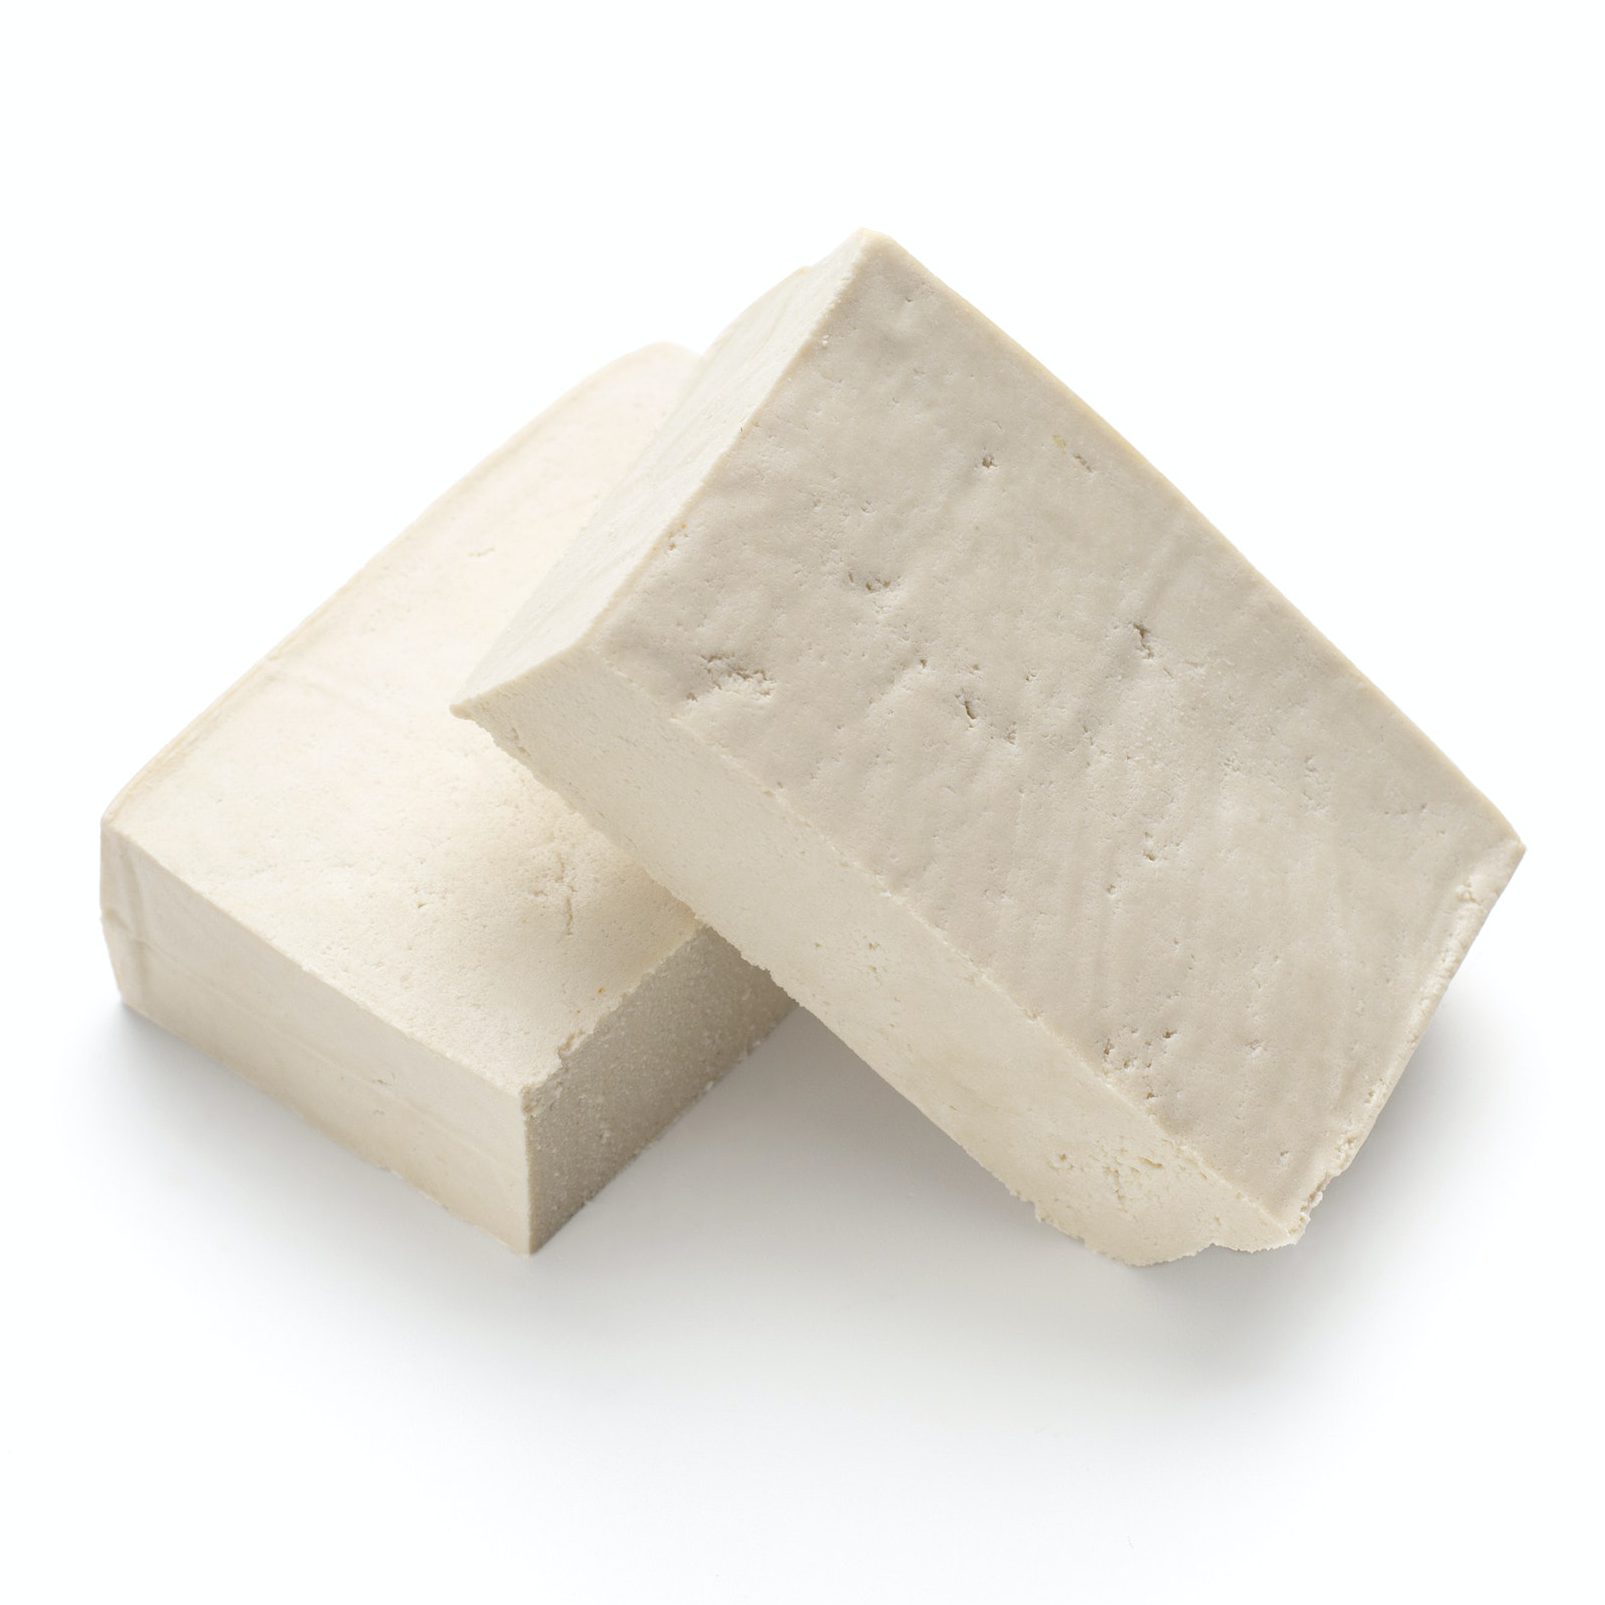 Blocks of tofu isolated on white background